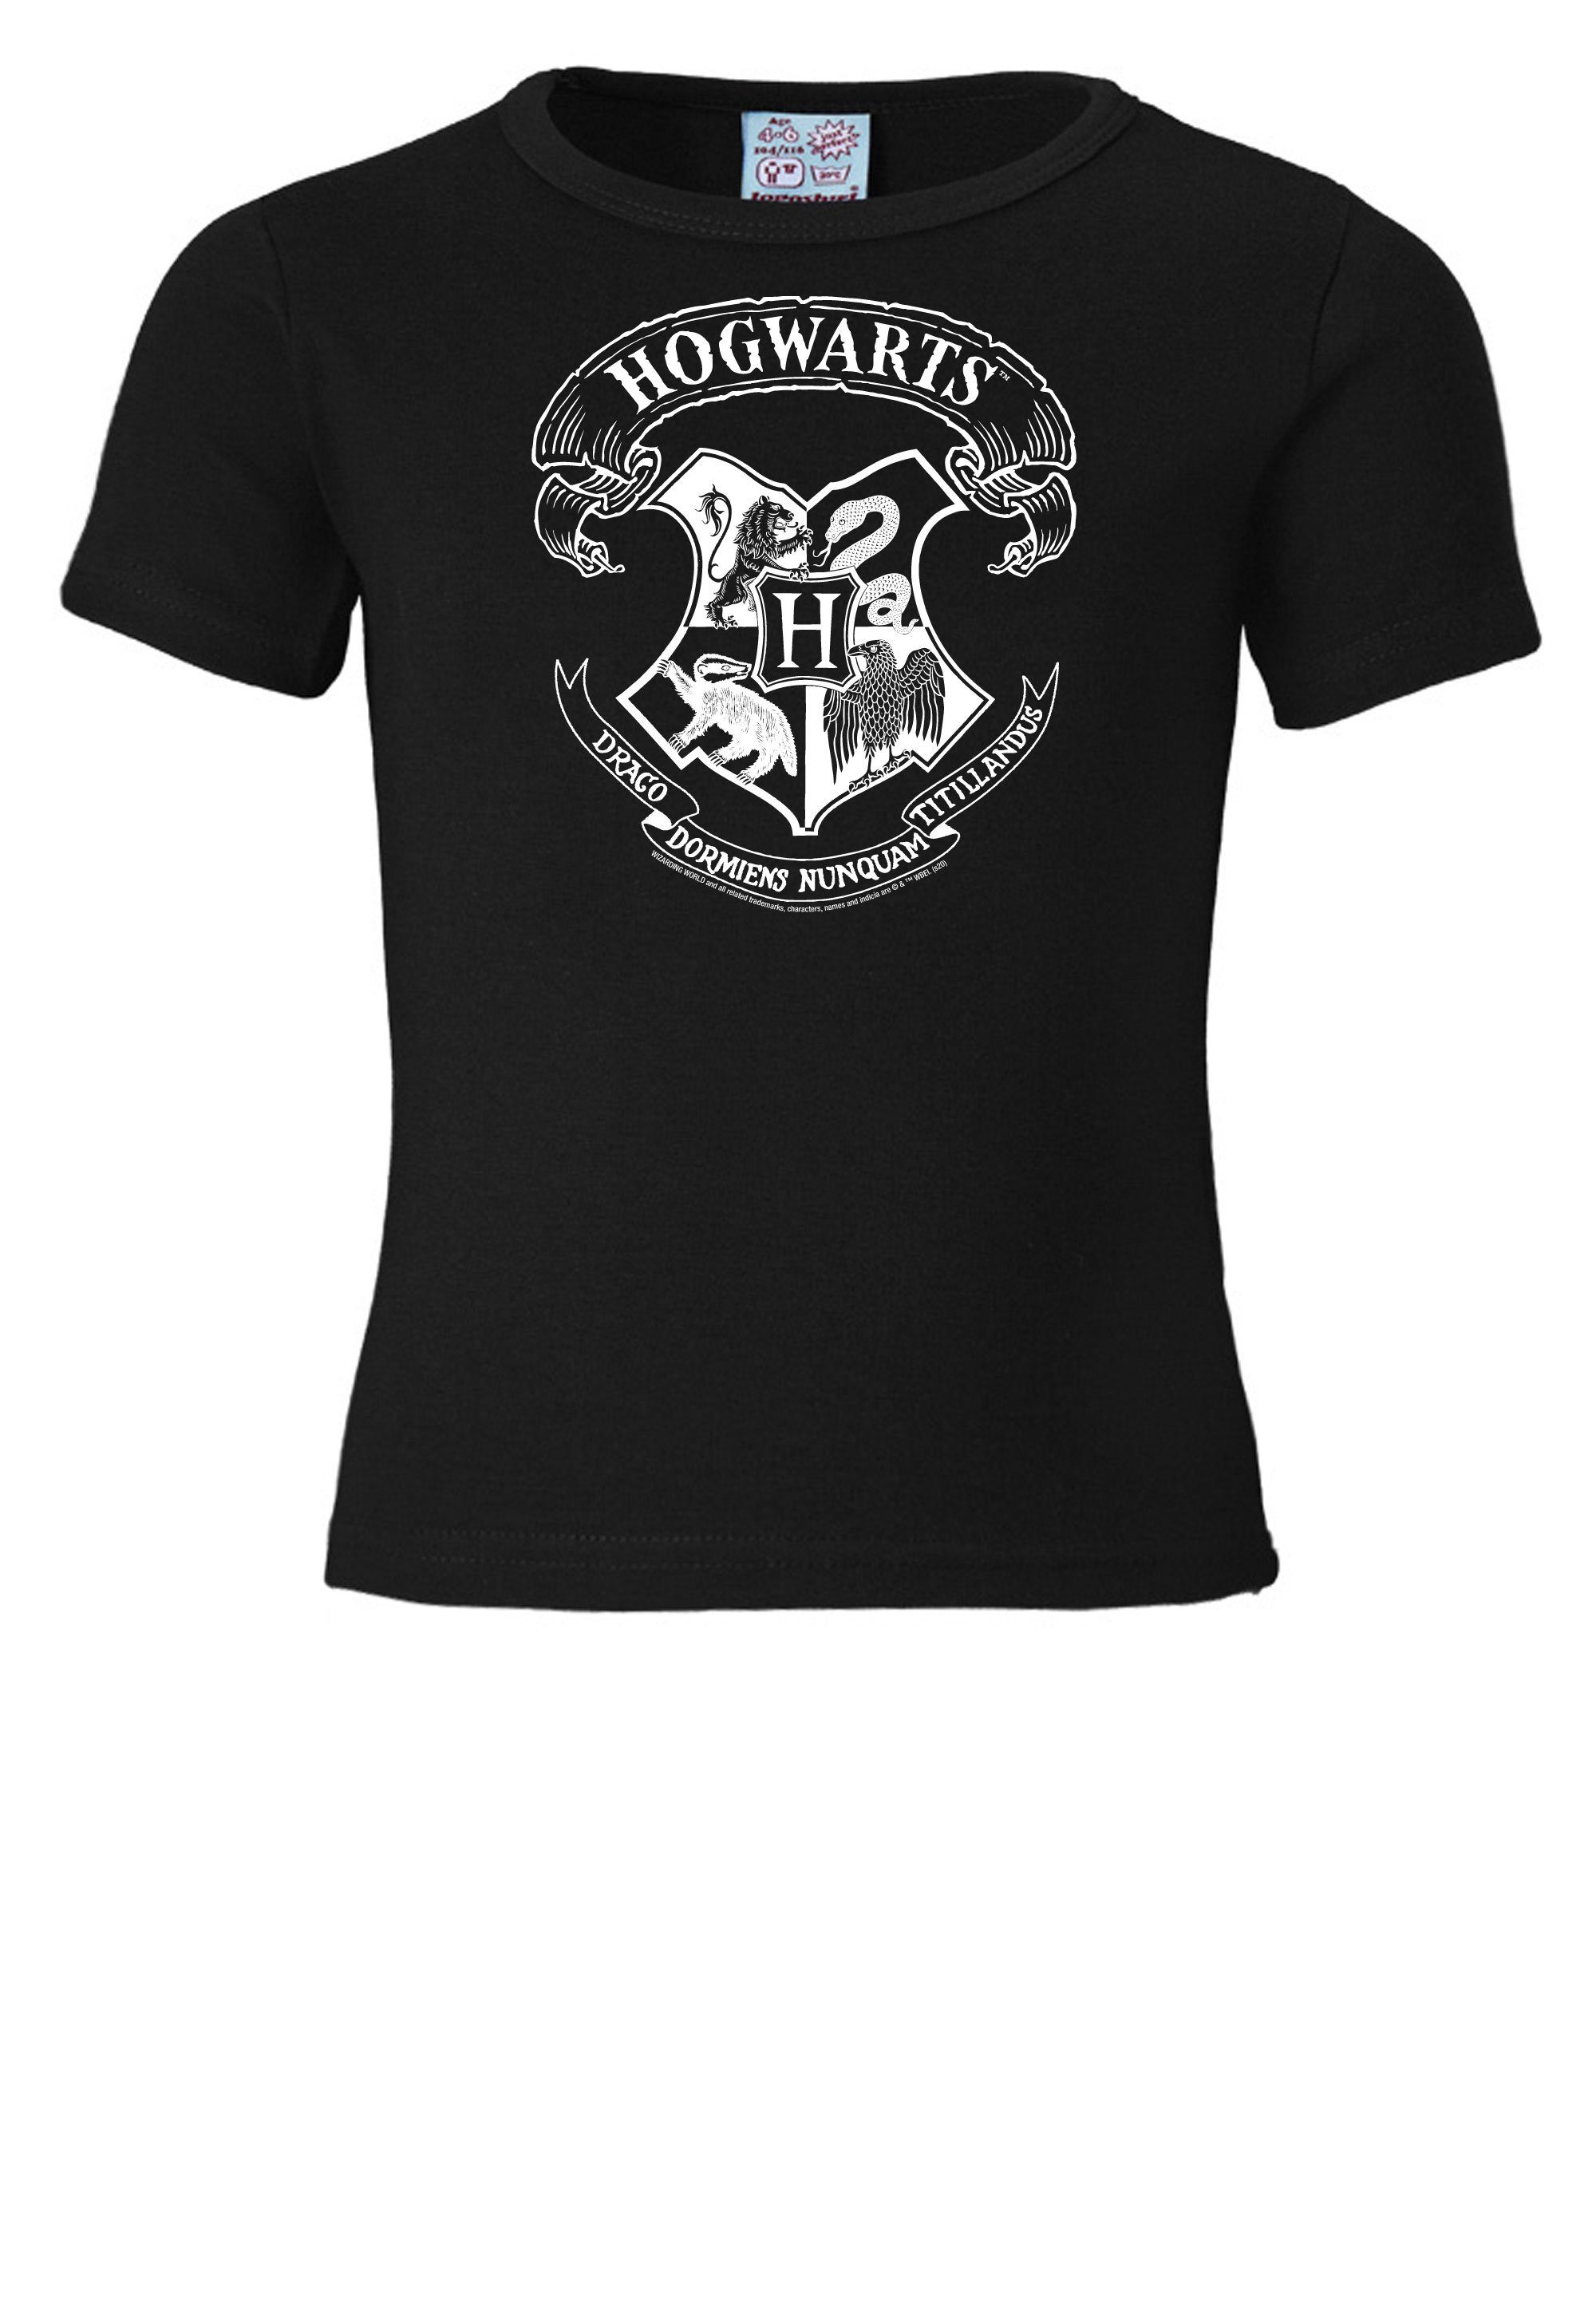 LOGOSHIRT T-Shirt Harry lizenziertem Potter (Weiß) - Originaldesign mit Logo Hogwarts